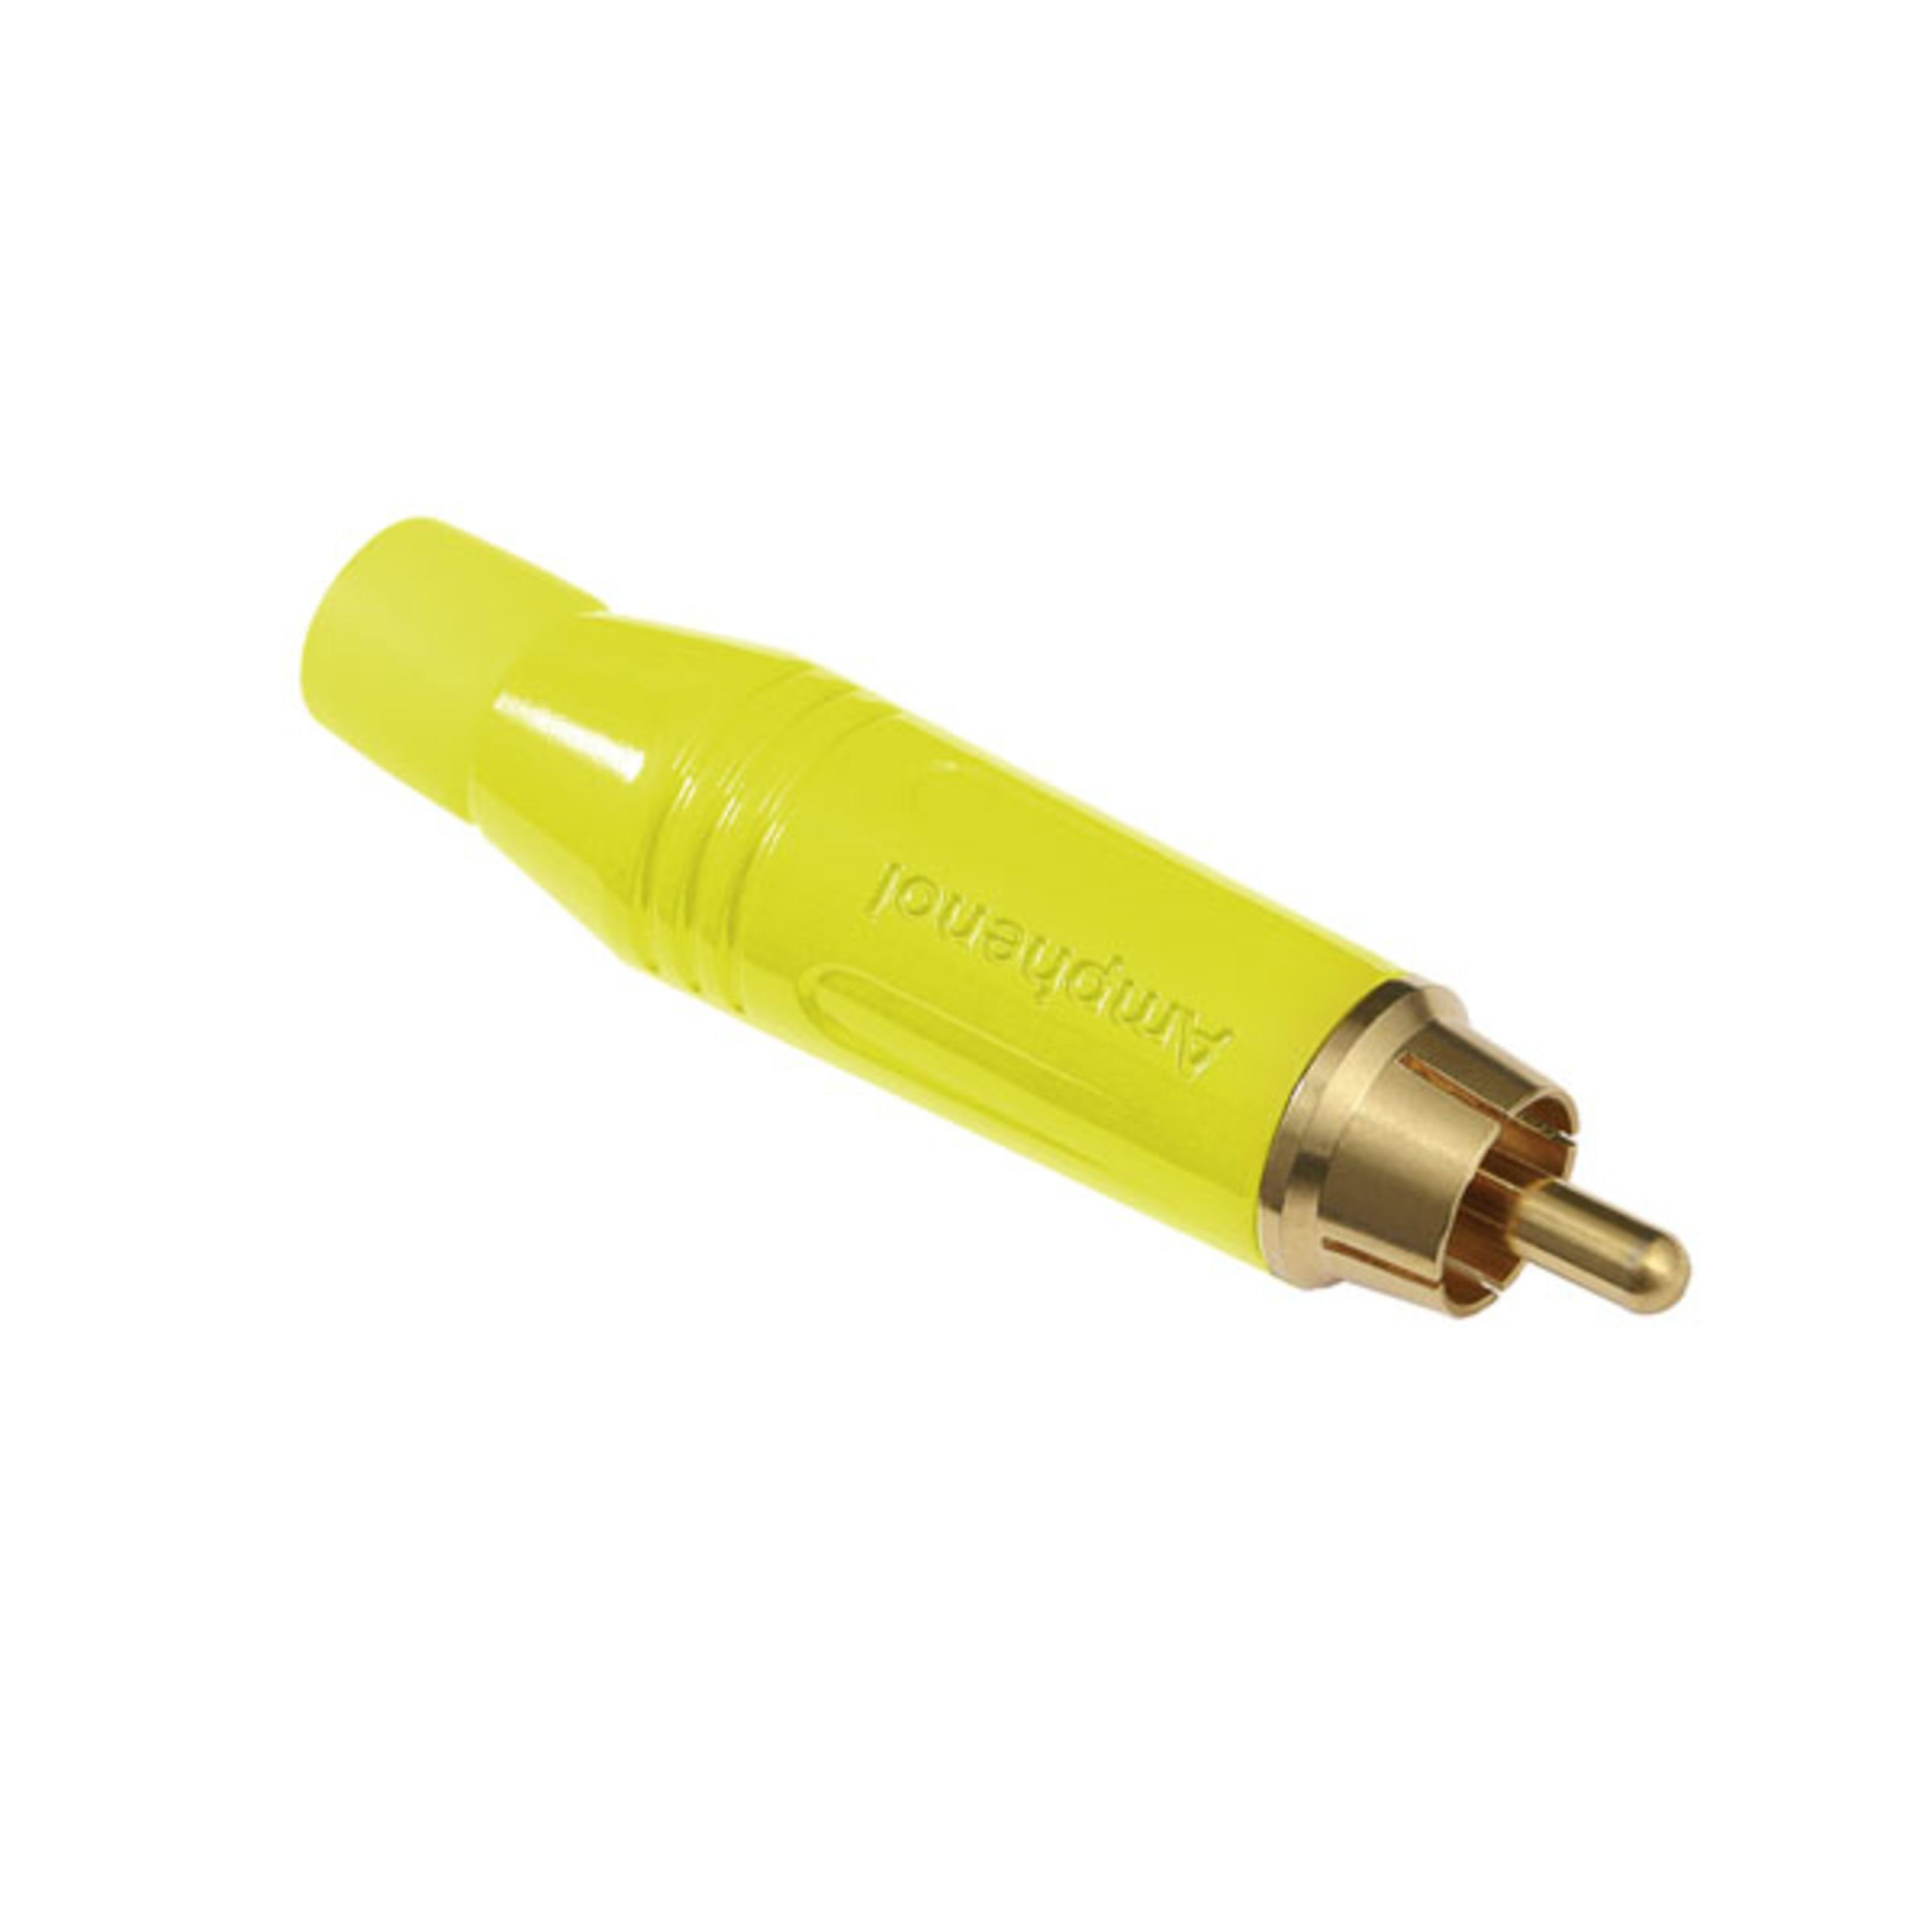 Amphenol Cinch-Stecker, (Stecker & Adapter, Kabel-Stecker), ACPR-YEL Cinchstecker gelb - Kabel Stecker